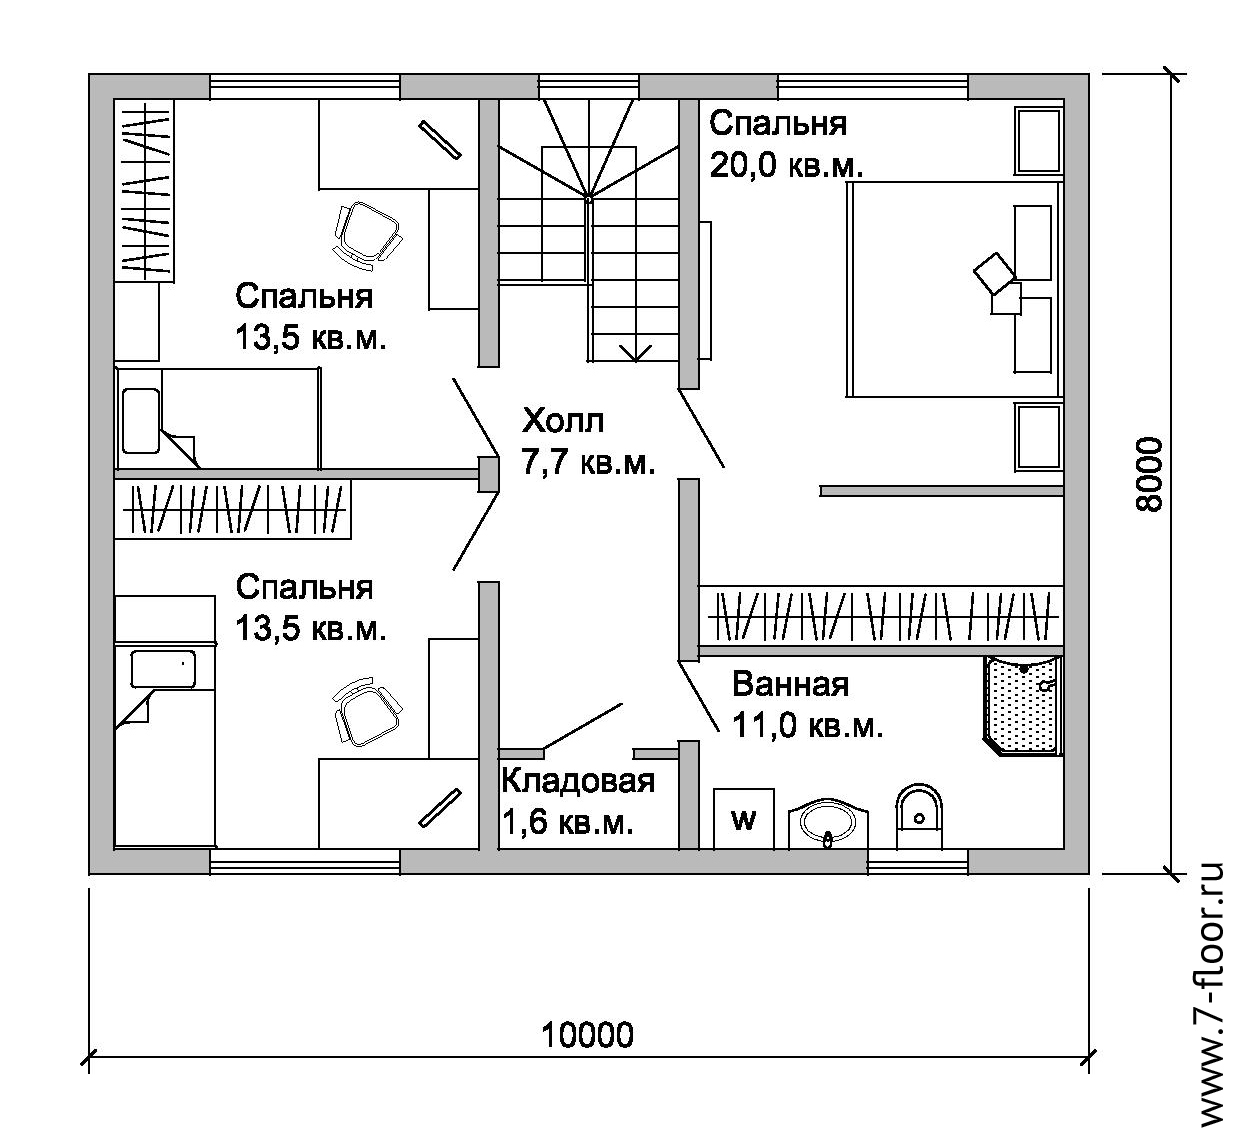 Размер спальни в доме. Планировки домов. Схема дома. Схема расположения комнат в доме. Чердежь дома комнат.